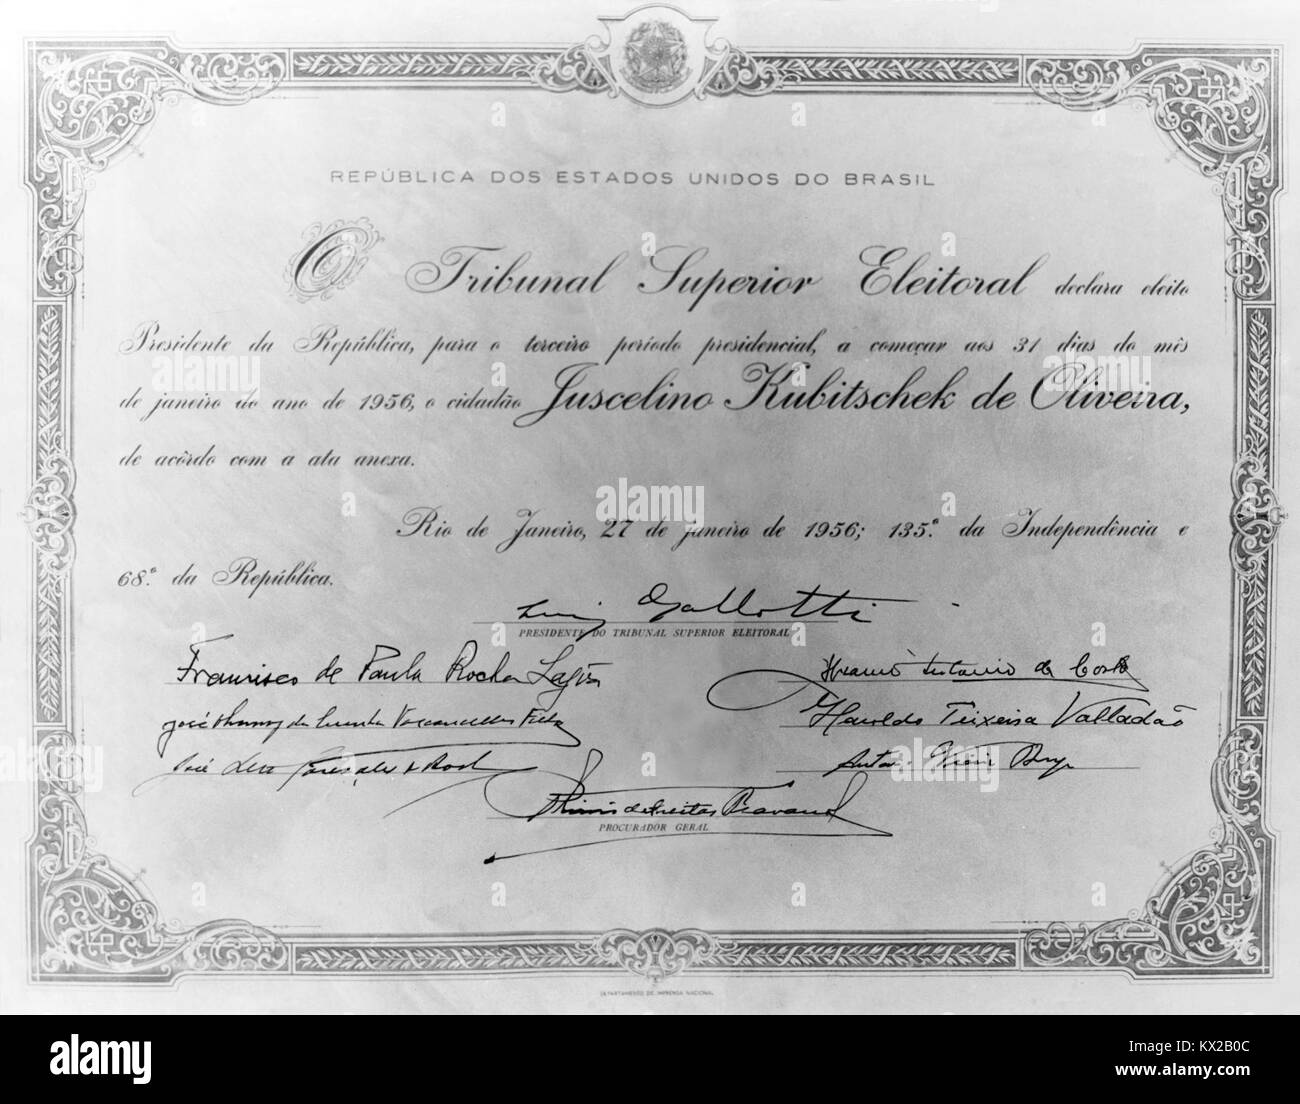 Diploma de Presidente da República de Juscelino Kubitschek Stock Photo